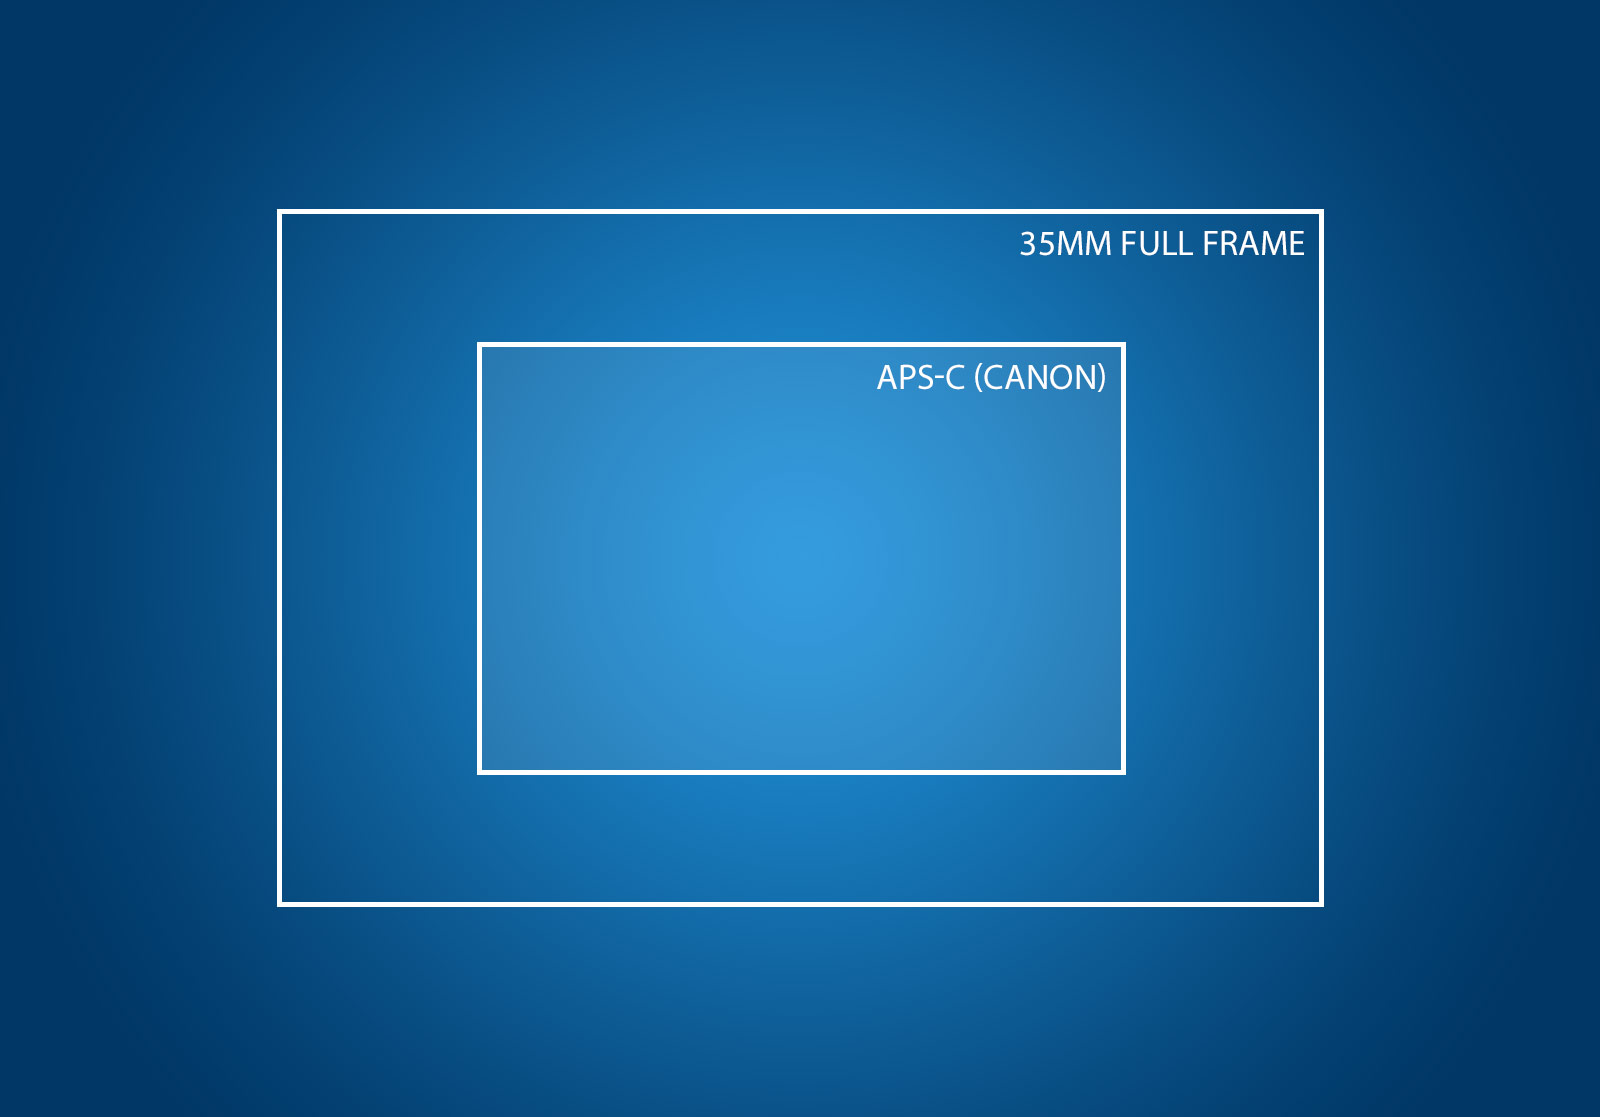 full frame sensor vs aps c